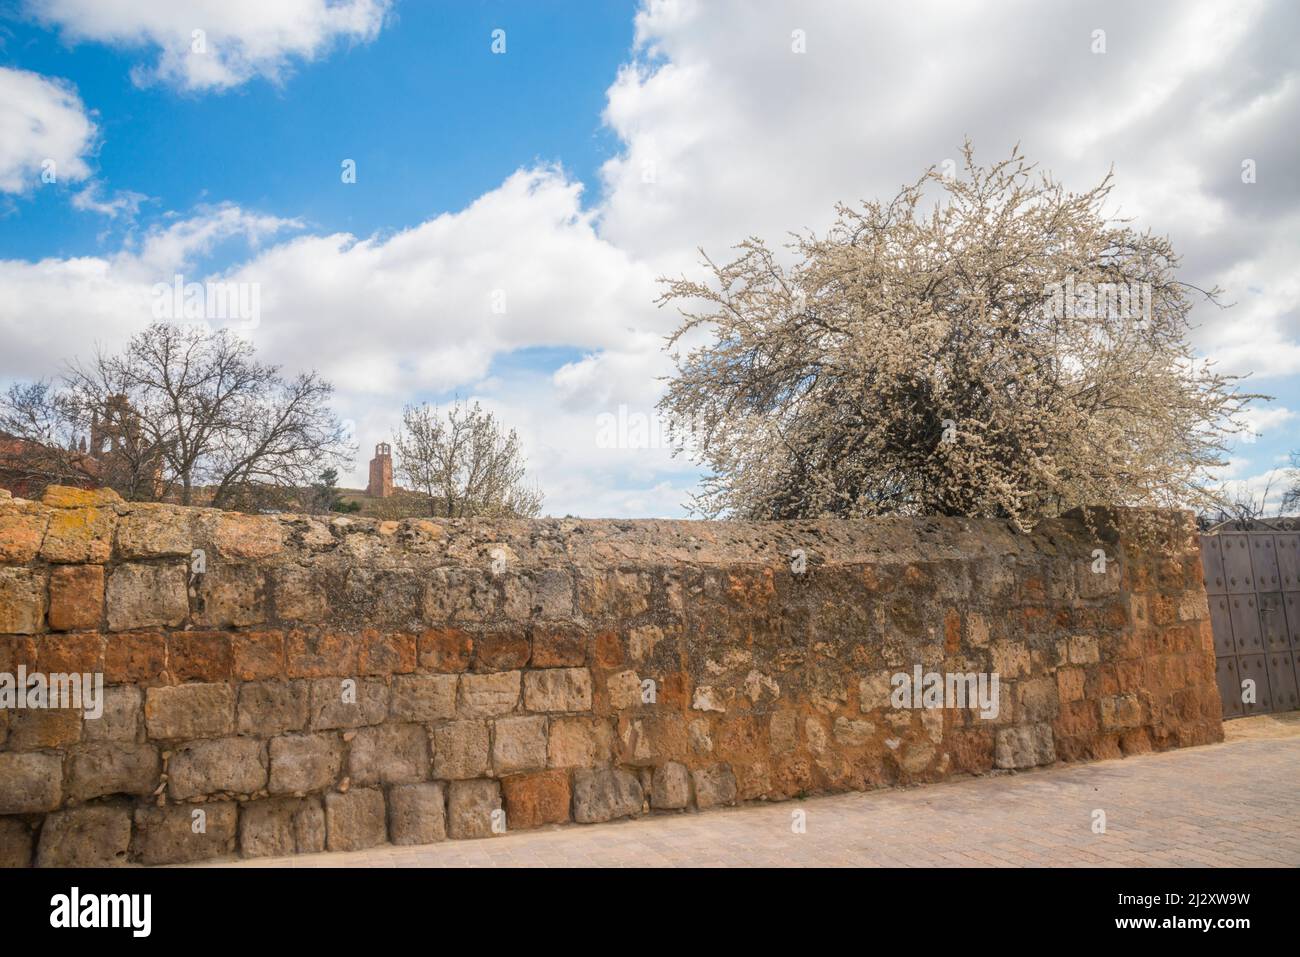 Arbre fleuri et mur en pierre. Ayllon, province de Ségovie, Castilla Leon, Espagne. Banque D'Images